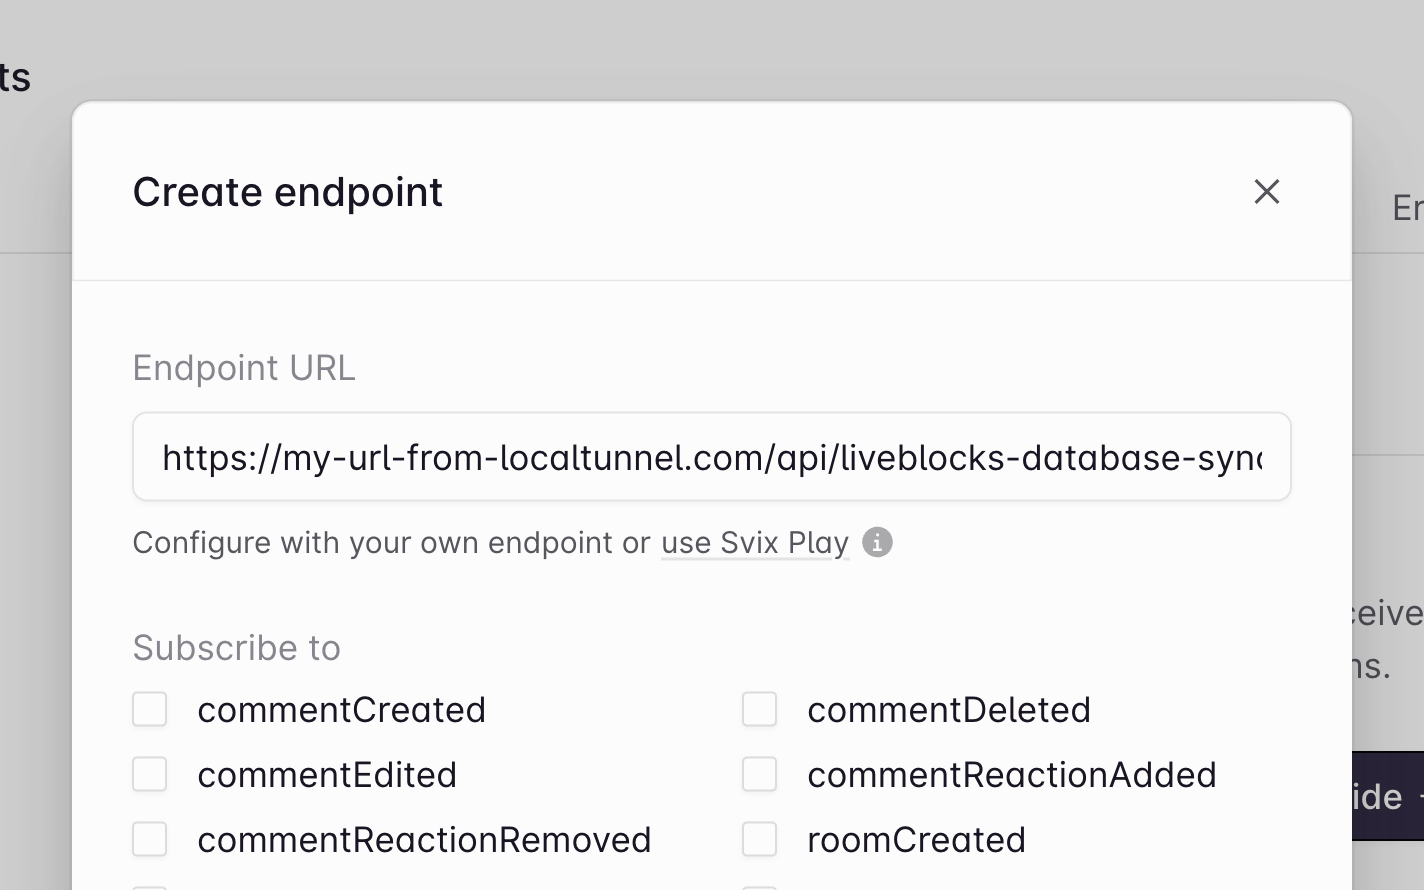 Add endpoint URL